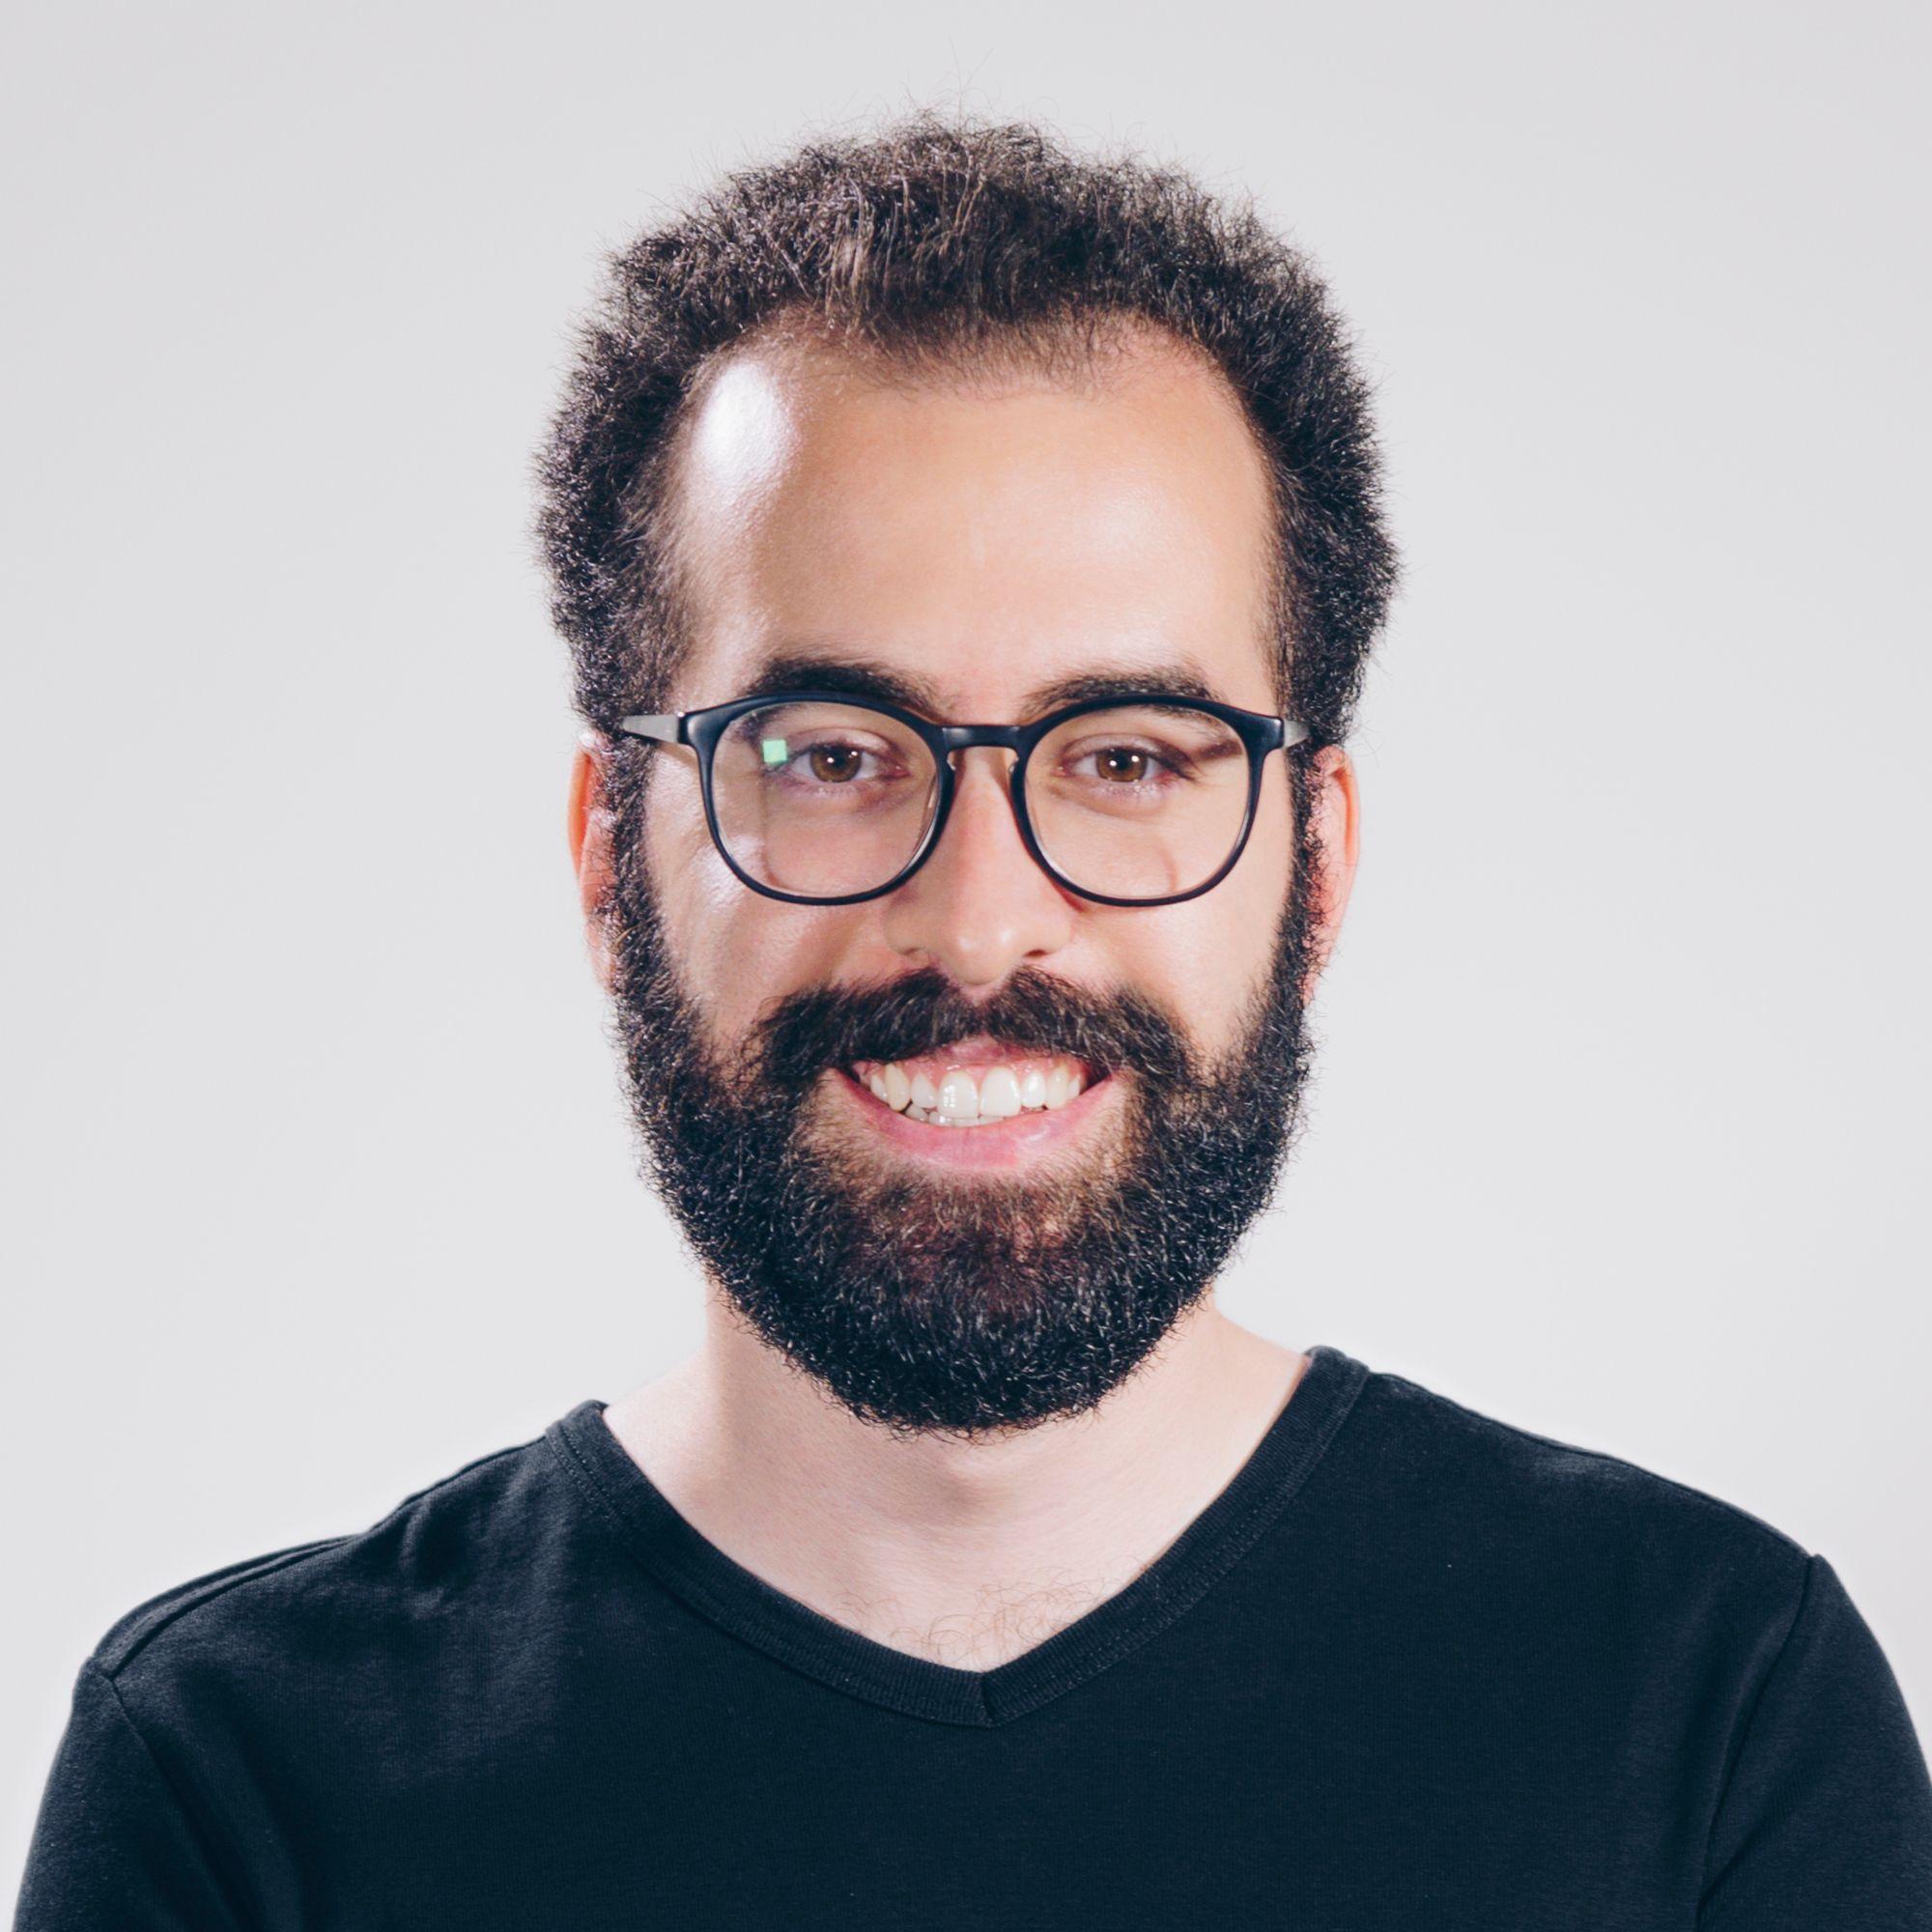 Profilbild von Pedro Vieira, UI/UX Designer